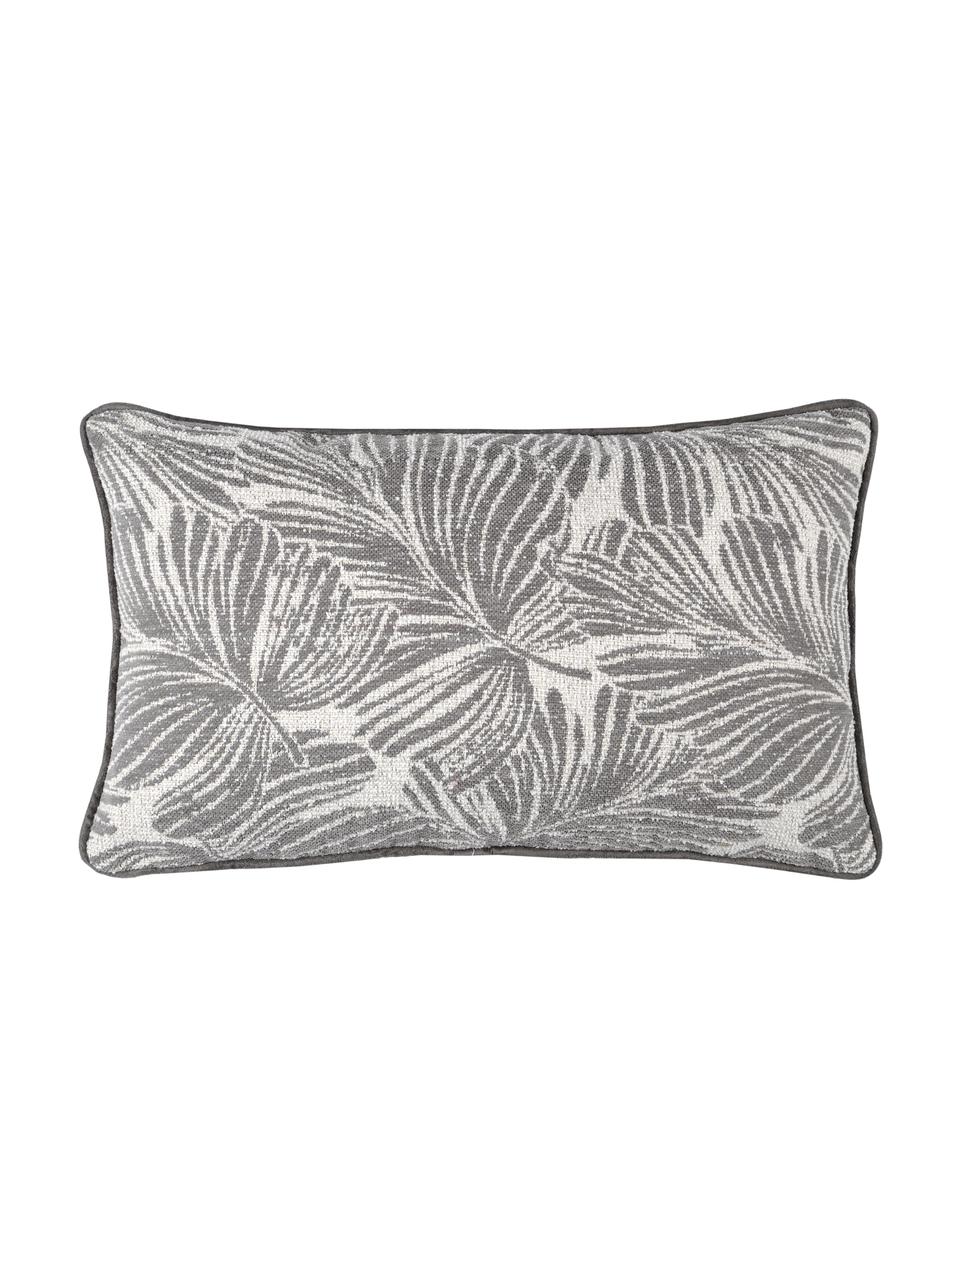 Kissen Hiro mit Kederumrandung und Blattmotiv, mit Inlett, Polyester, Dunkelgrau, Weiss, 30 x 50 cm